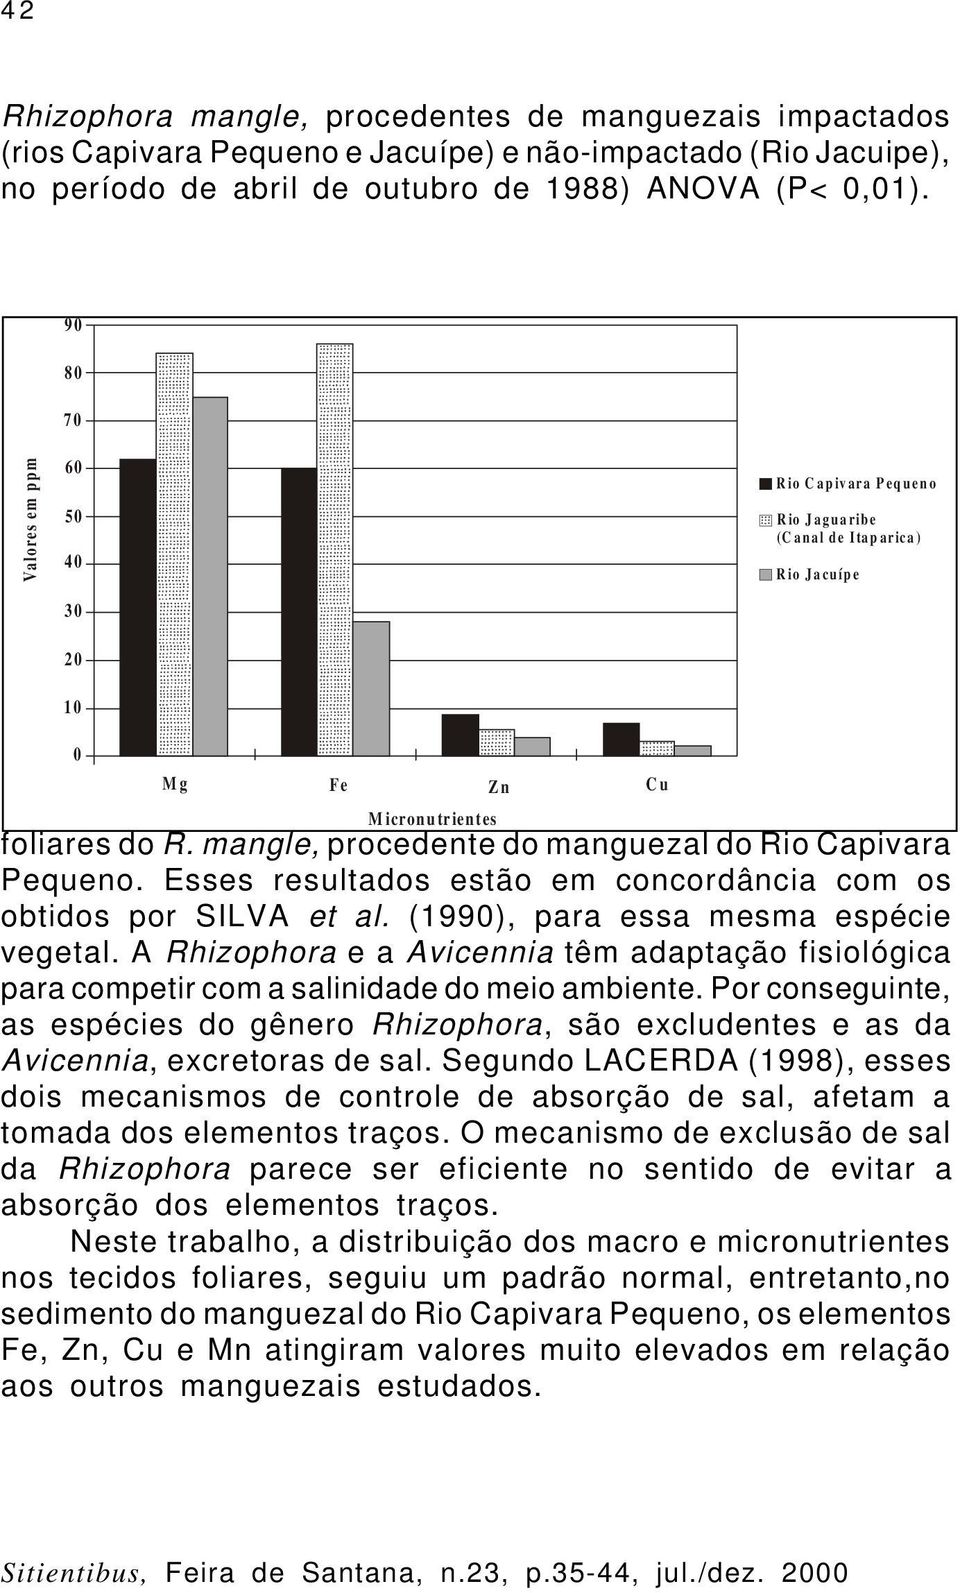 foliares do R. mangle, procedente do manguezal do Rio Capivara Pequeno. Esses resultados estão em concordância com os obtidos por SILVA et al. (1990), para essa mesma espécie vegetal.